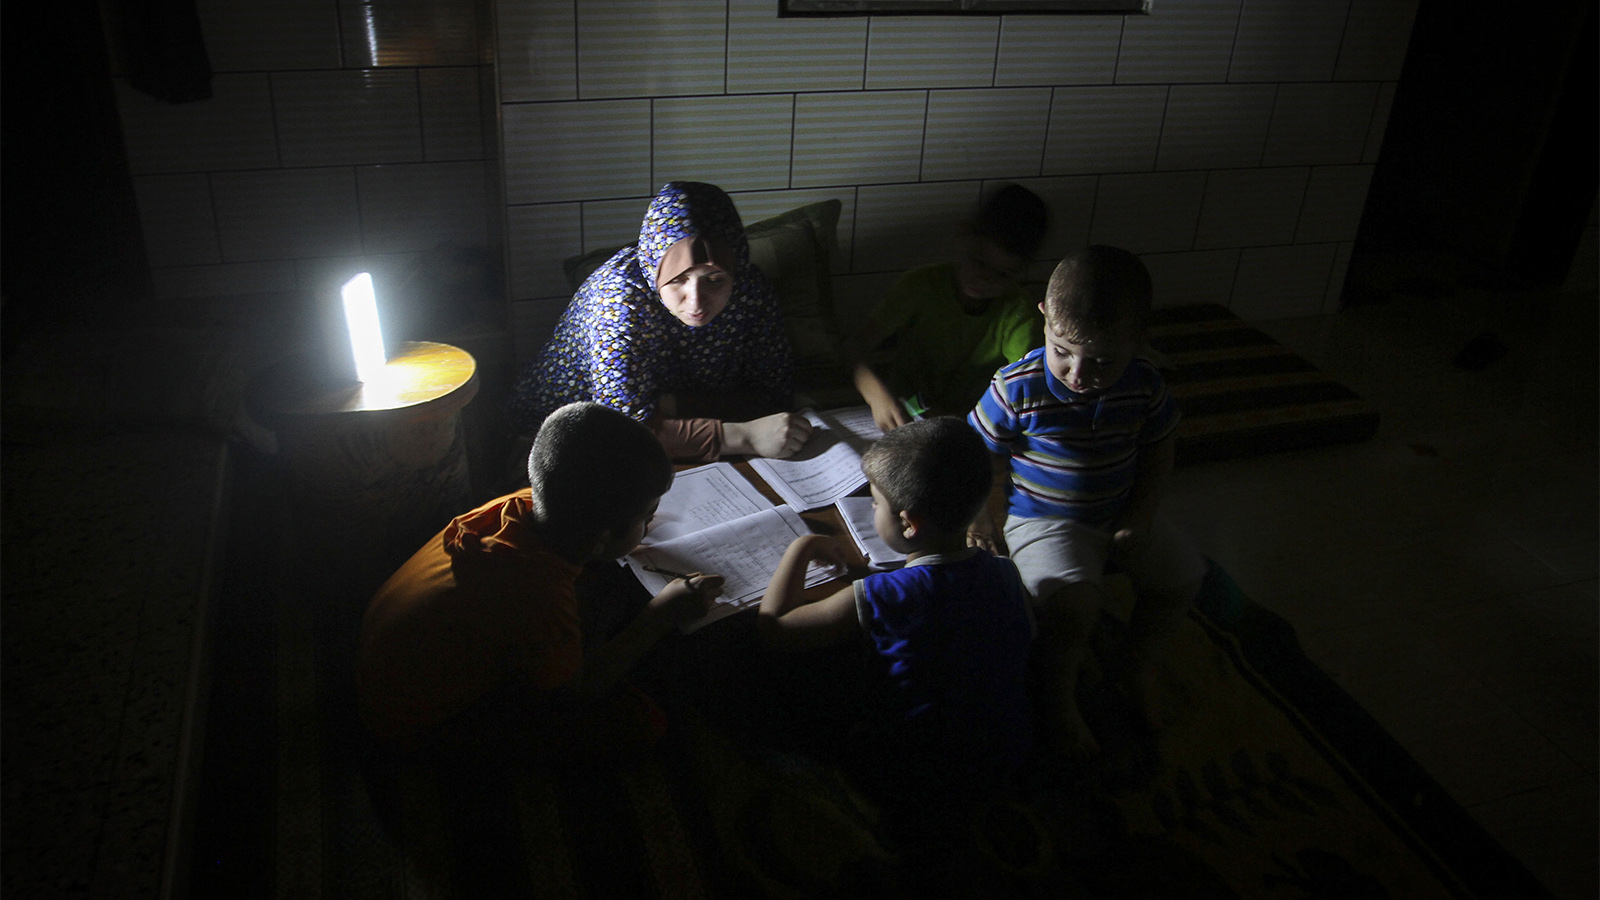 משפחה פלסטינית בחשכה, בעקבות הפסקת חשמל ברפיח (צילום: עבד רחים כתיב / פלאש 90).